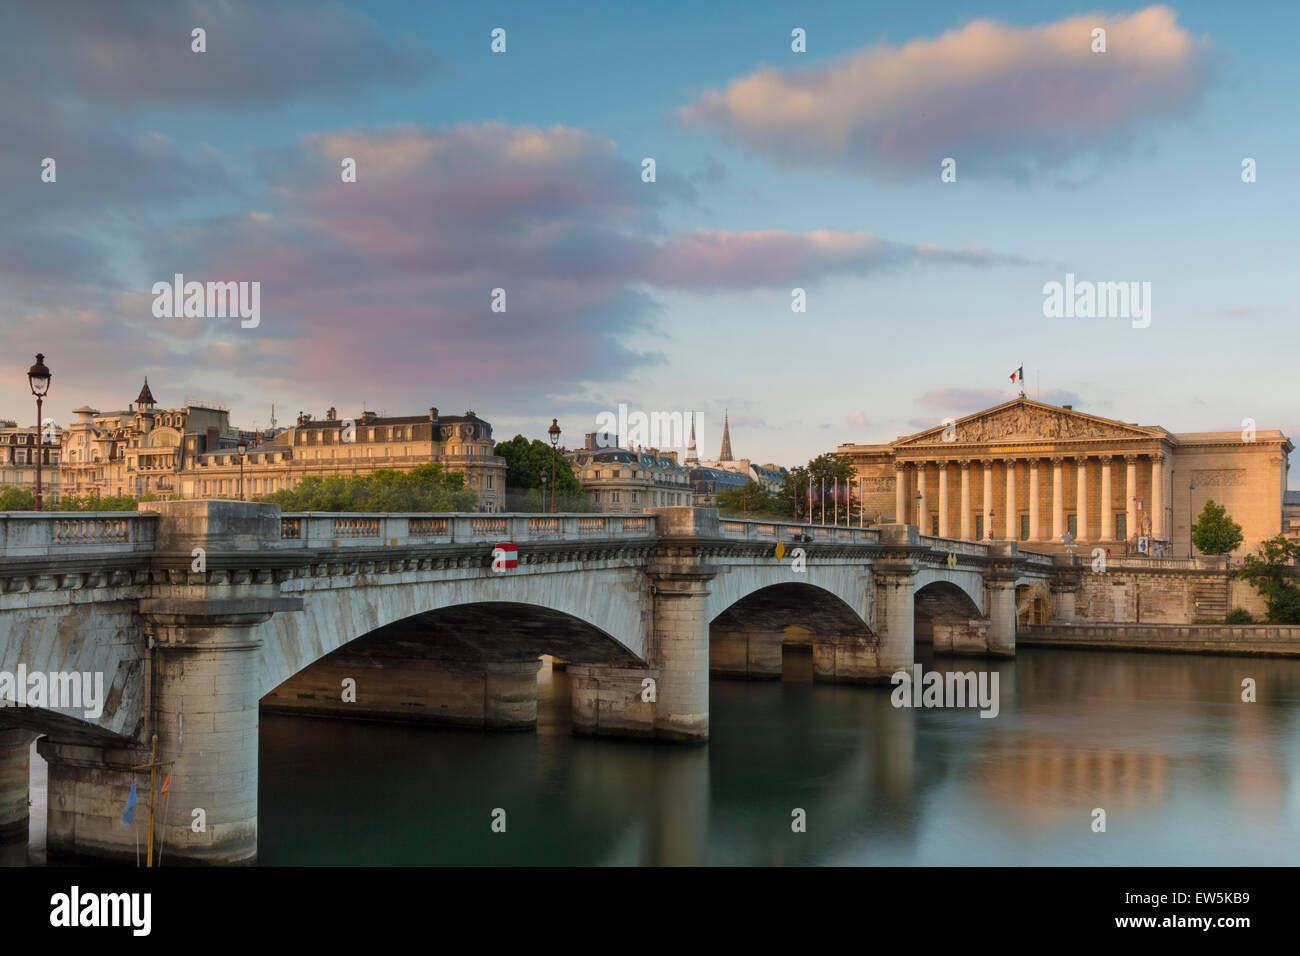 Dawn over River Seine, Pont de la Concorde and Assemblee Nationale, Paris, France Stock Photo